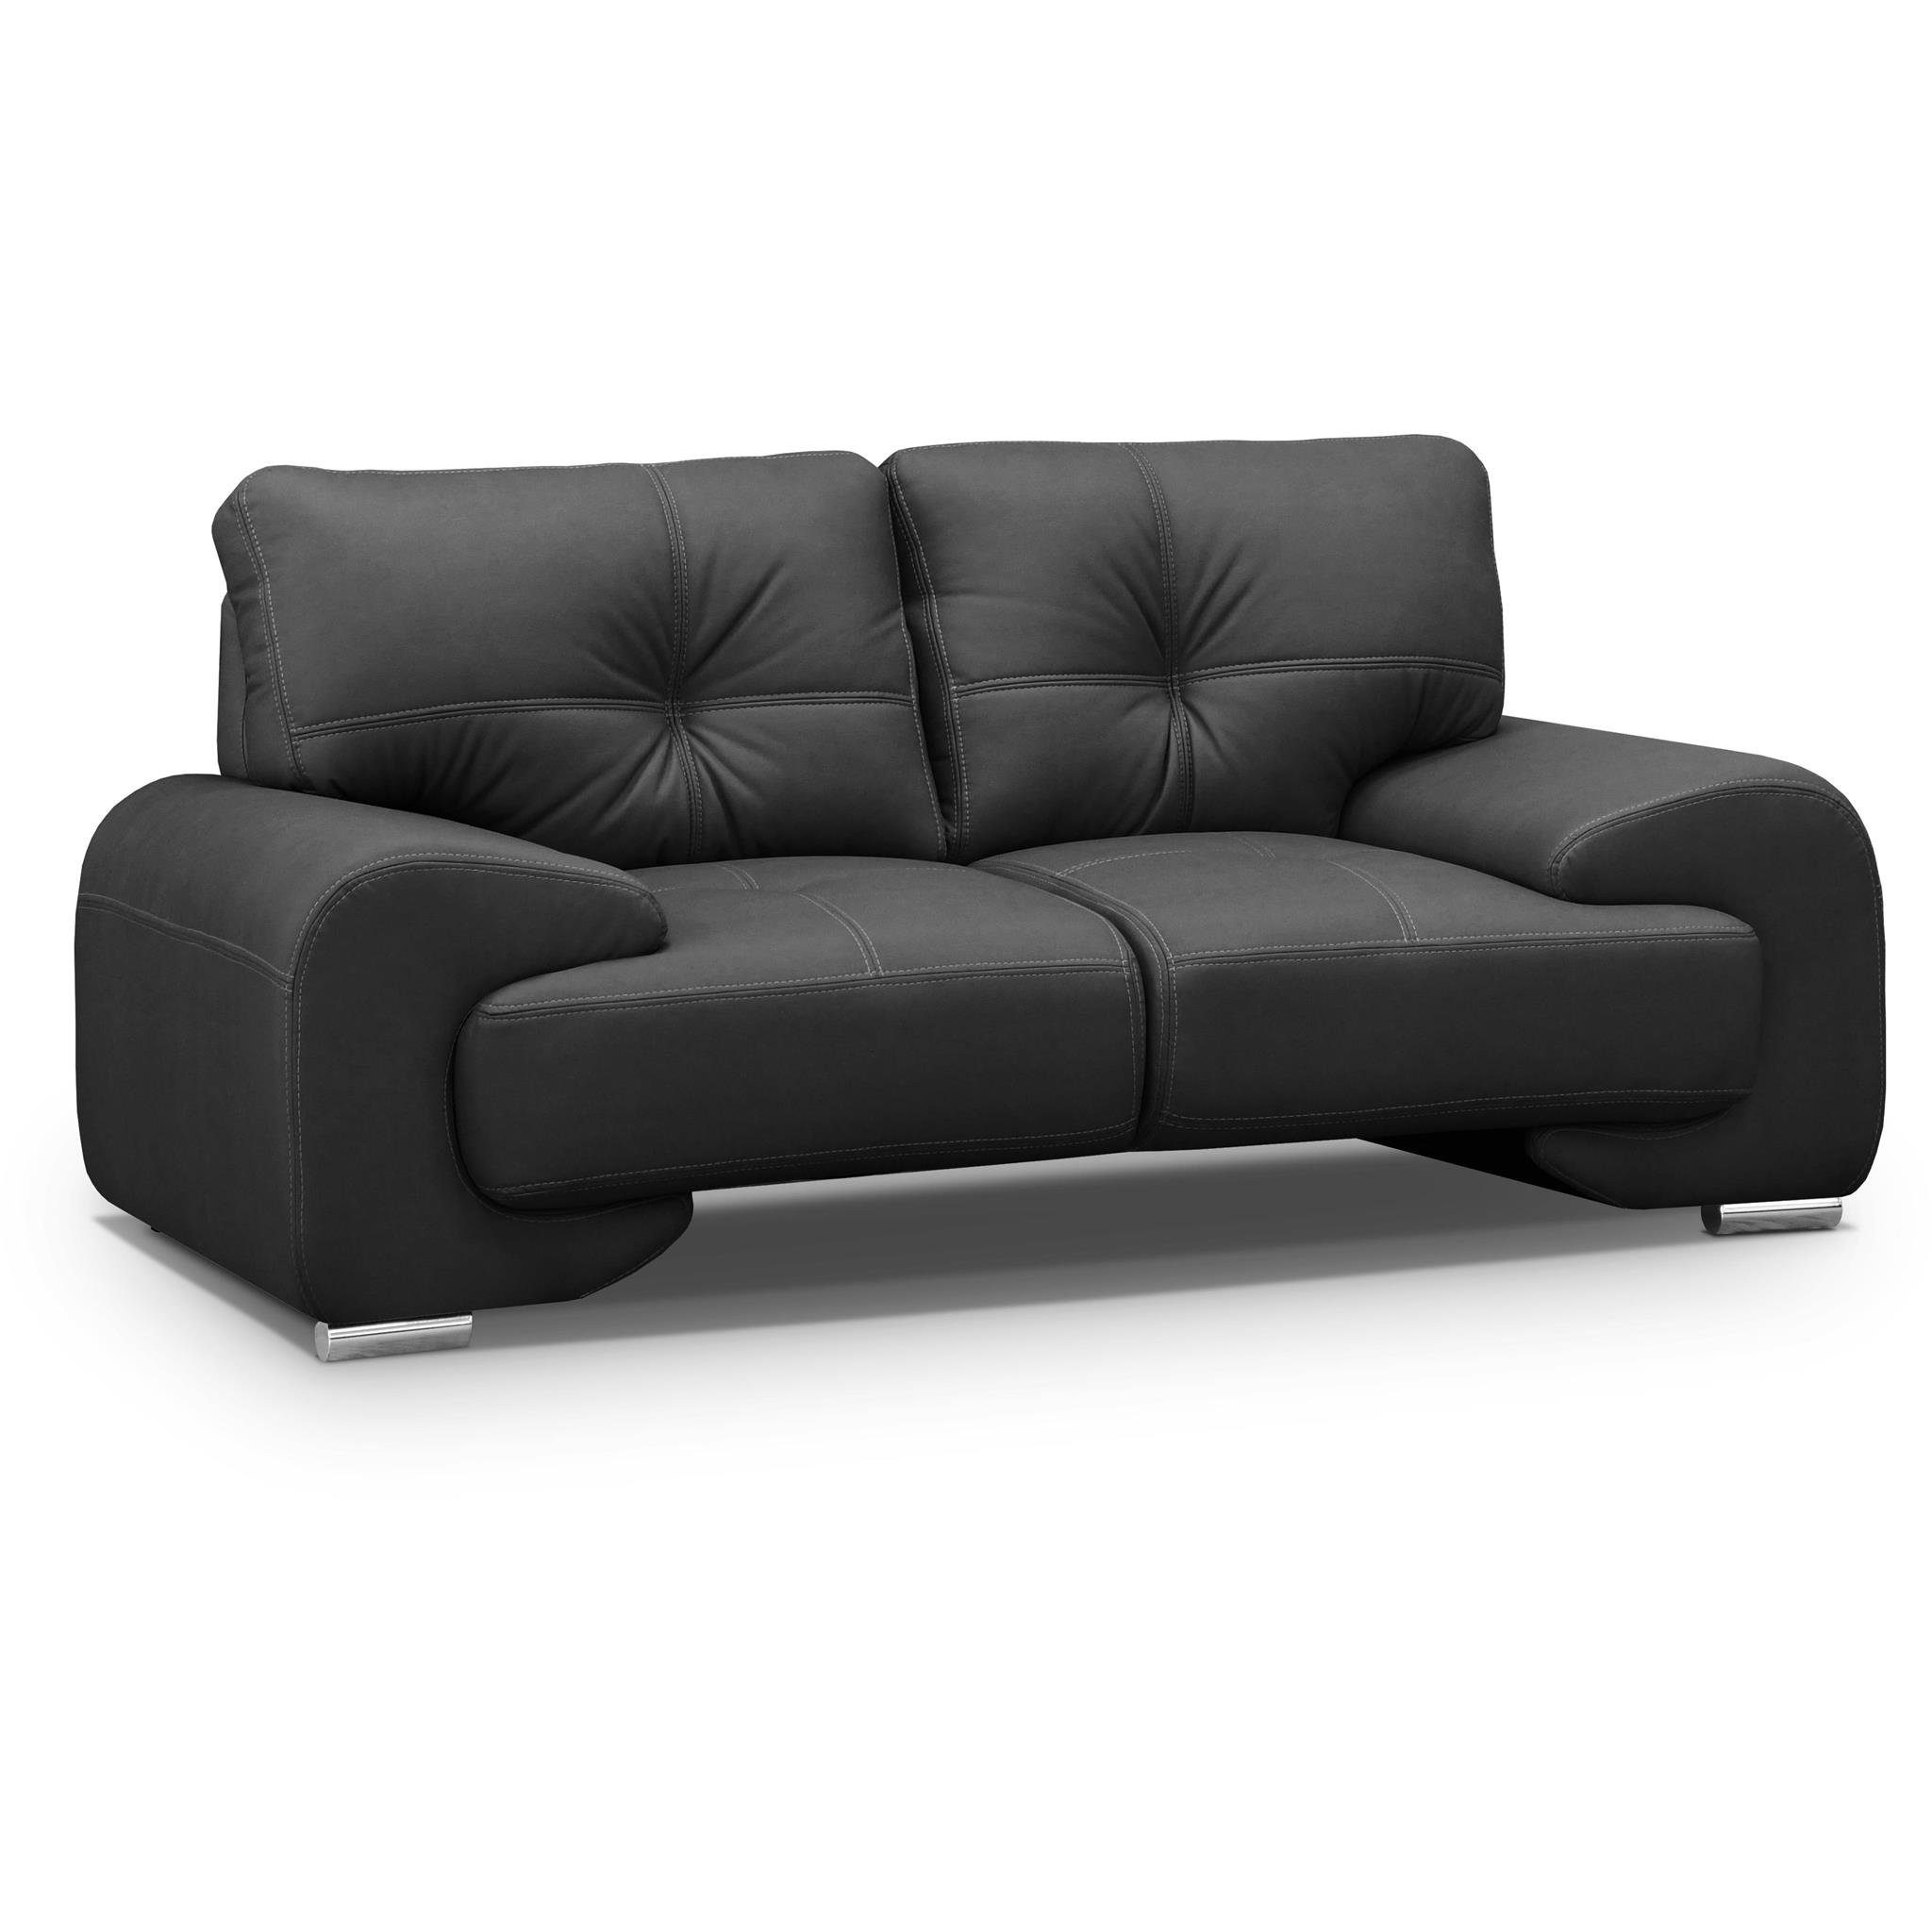 Beautysofa 2-Sitzer Maxime lux, 2-Sitzer Sofa im modernes Design aus Kunstleder, mit Wellenunterfederung, mit dekorativen Nähten Schwarz (vega 99)